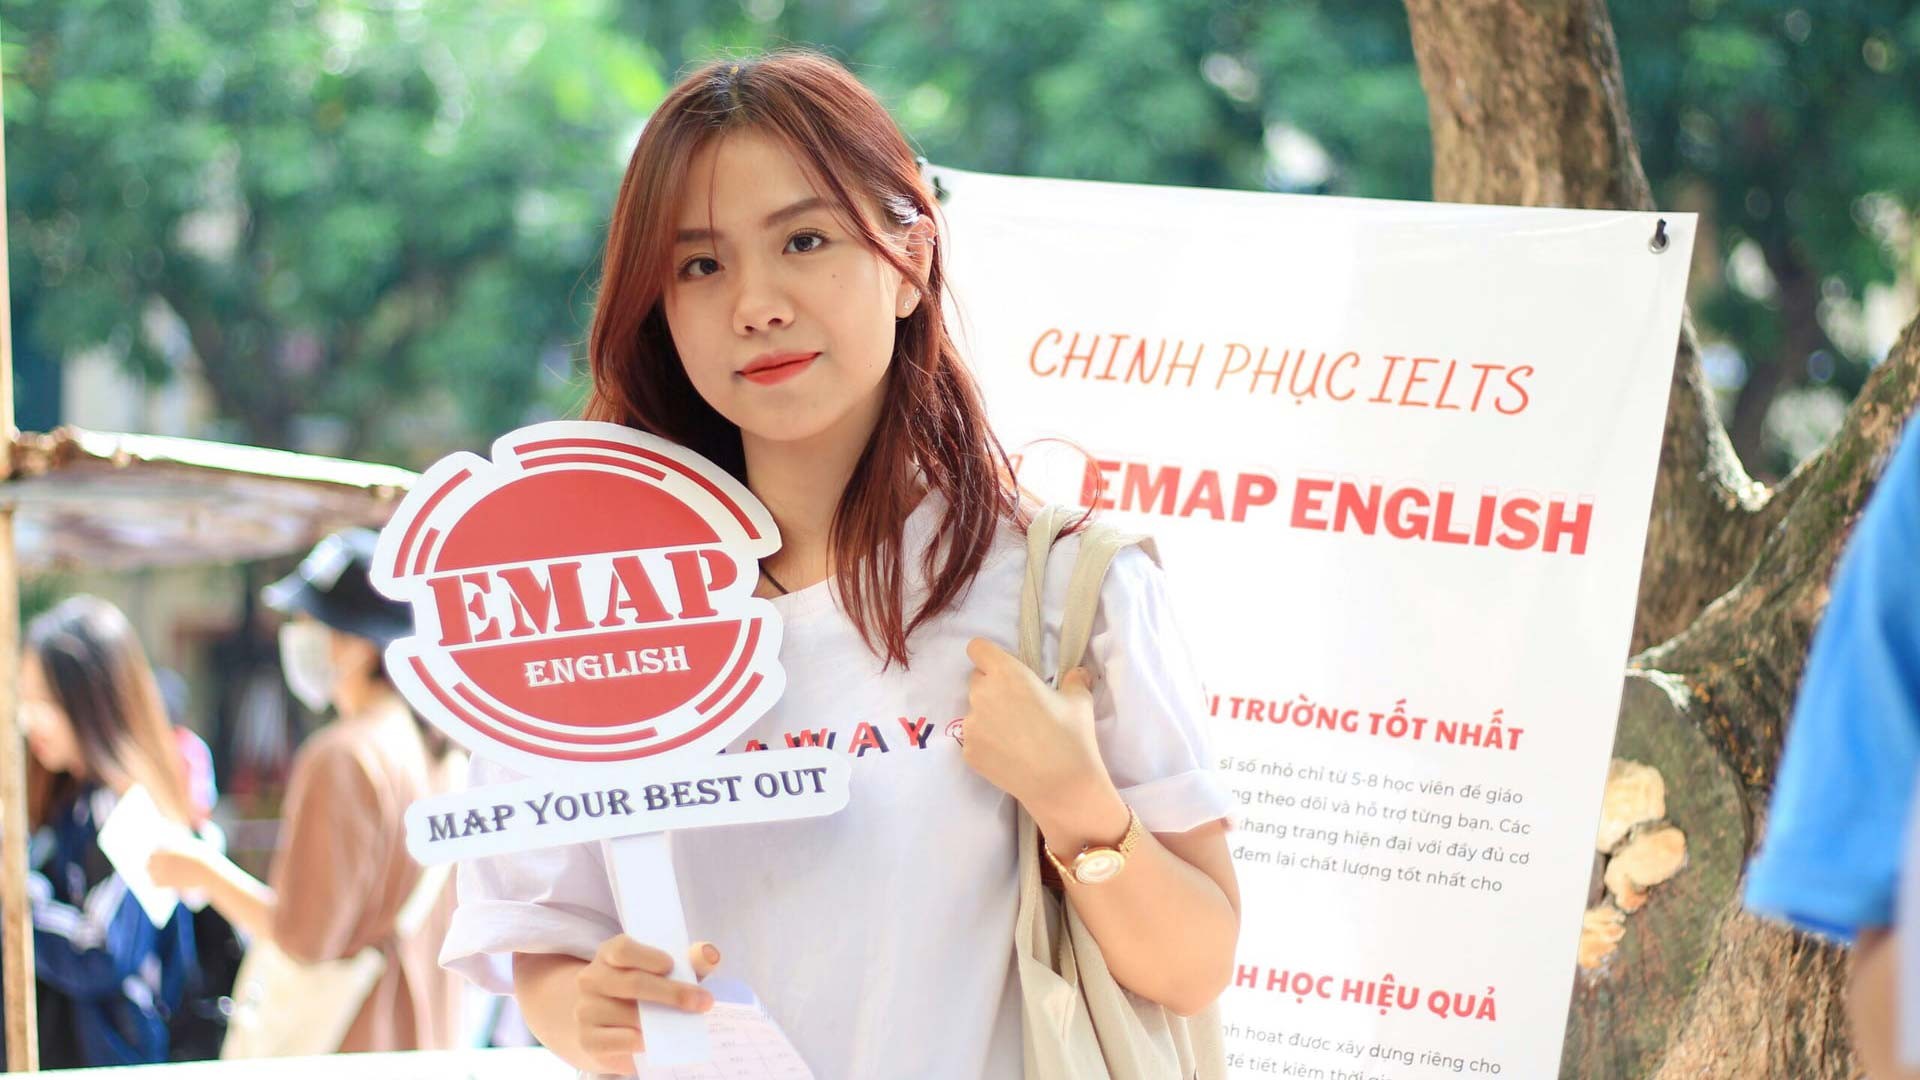 Trải nghiệm luyện thi IELTS tại Anh ngữ EMAP: Tất cả vì kết quả của học viên!